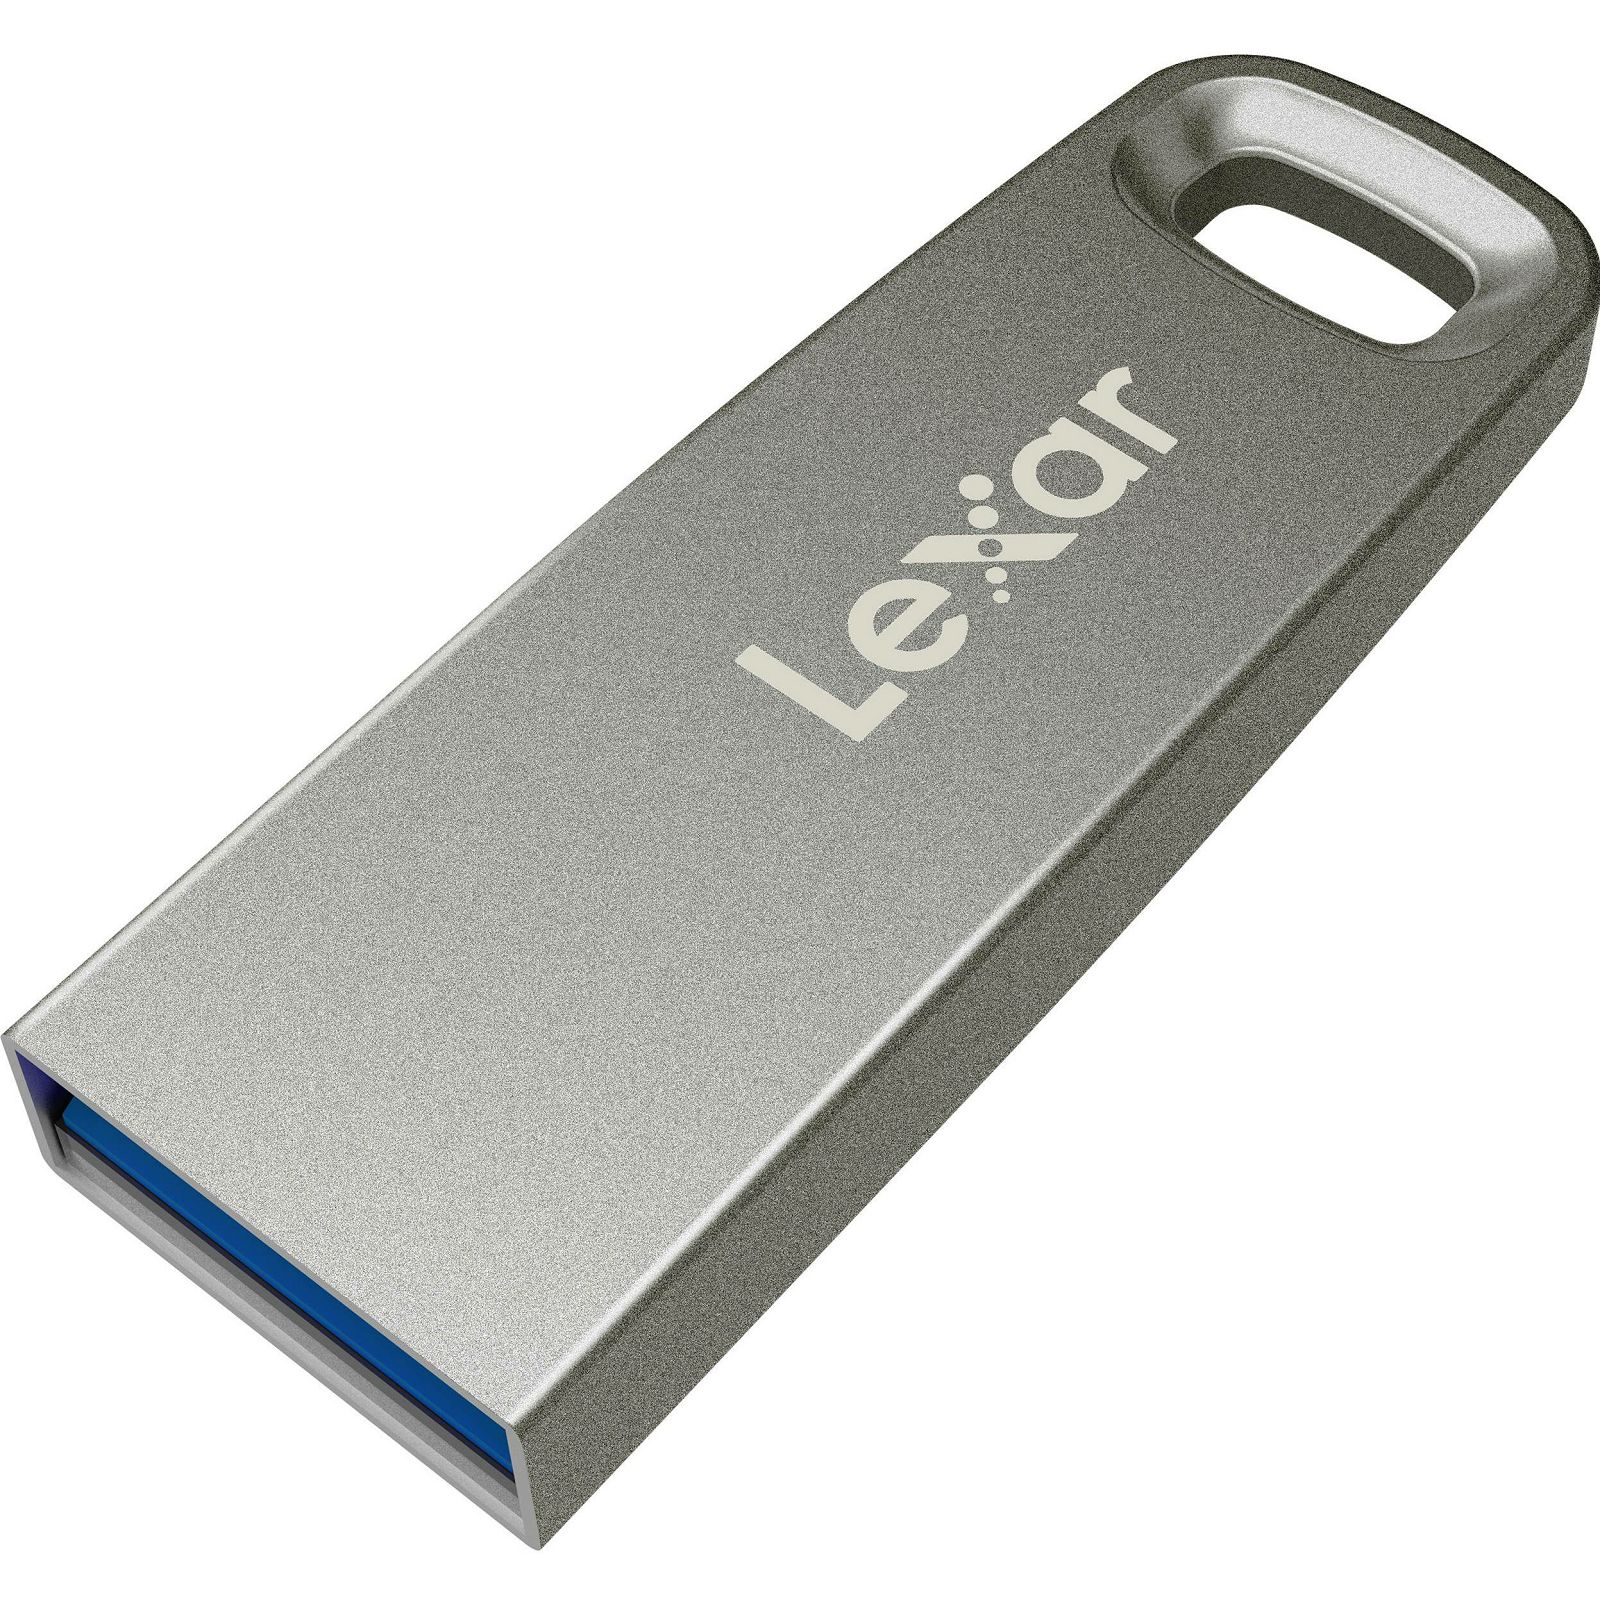 Lexar JumpDrive M35 32GB USB 3.0 Silver Housing 100MB/s memorija (LJDM035032G-BNSNG)